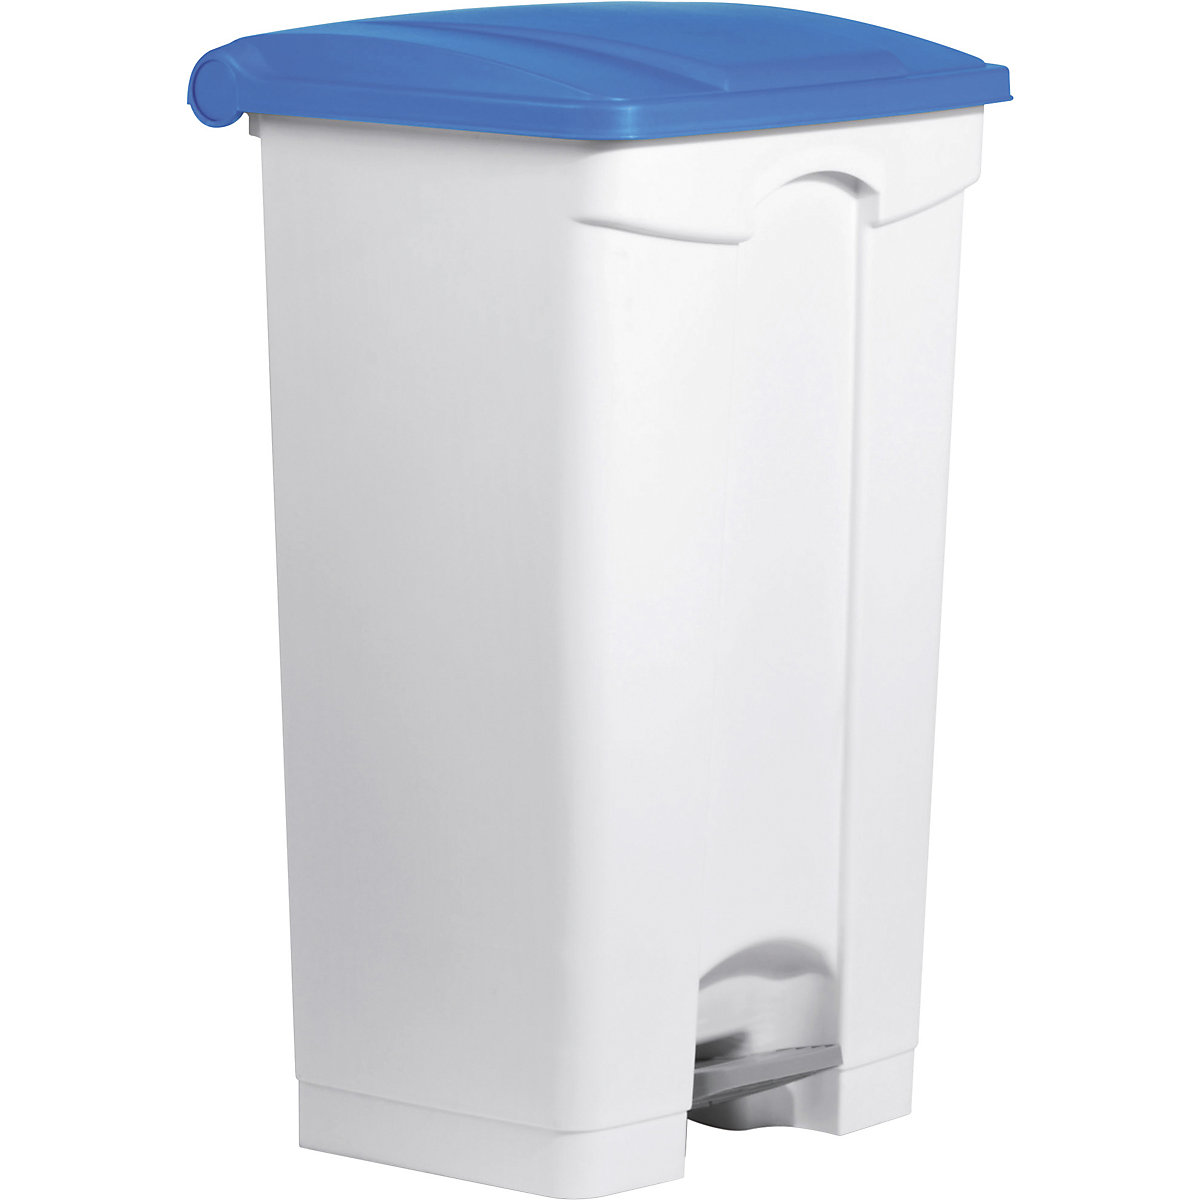 Spremnik za otpad s papučicom – helit, volumen 90 l, ŠxVxD 500 x 830 x 410 mm, u bijeloj boji, poklopac u plavoj boji-5